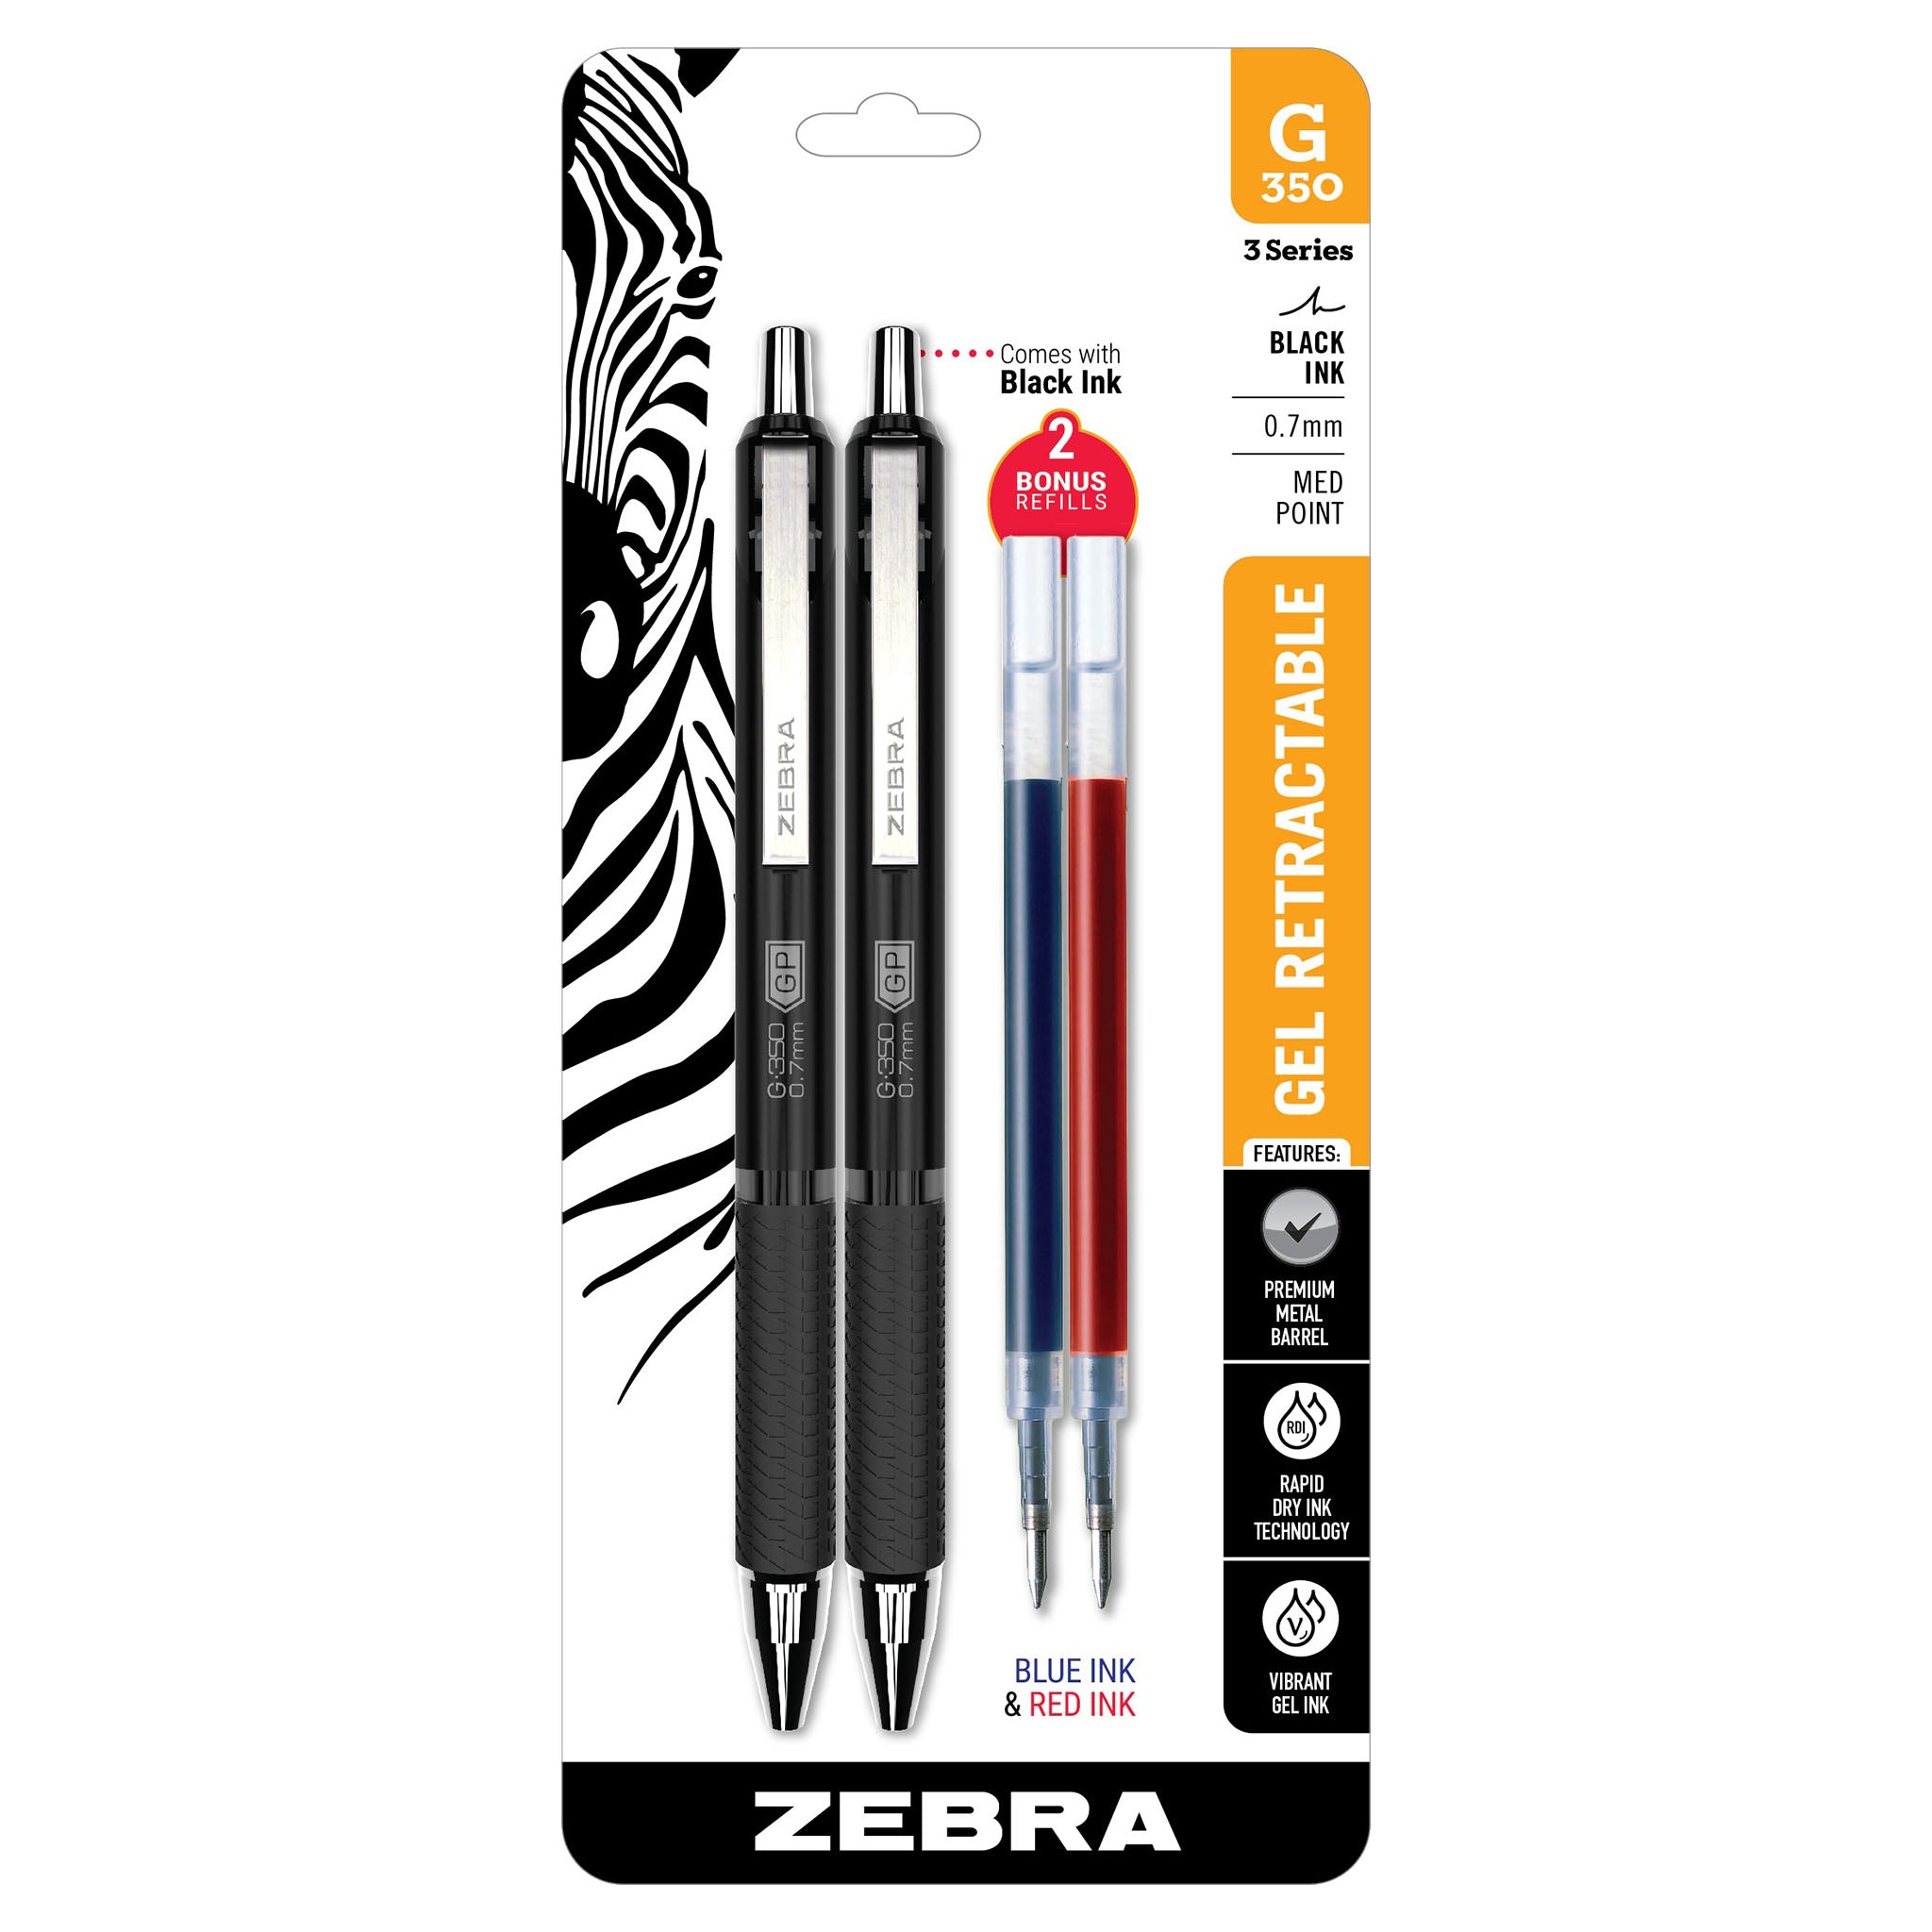 Wholesale 40 Pack Multicolor Retractable Refillable Ballpoint Pen